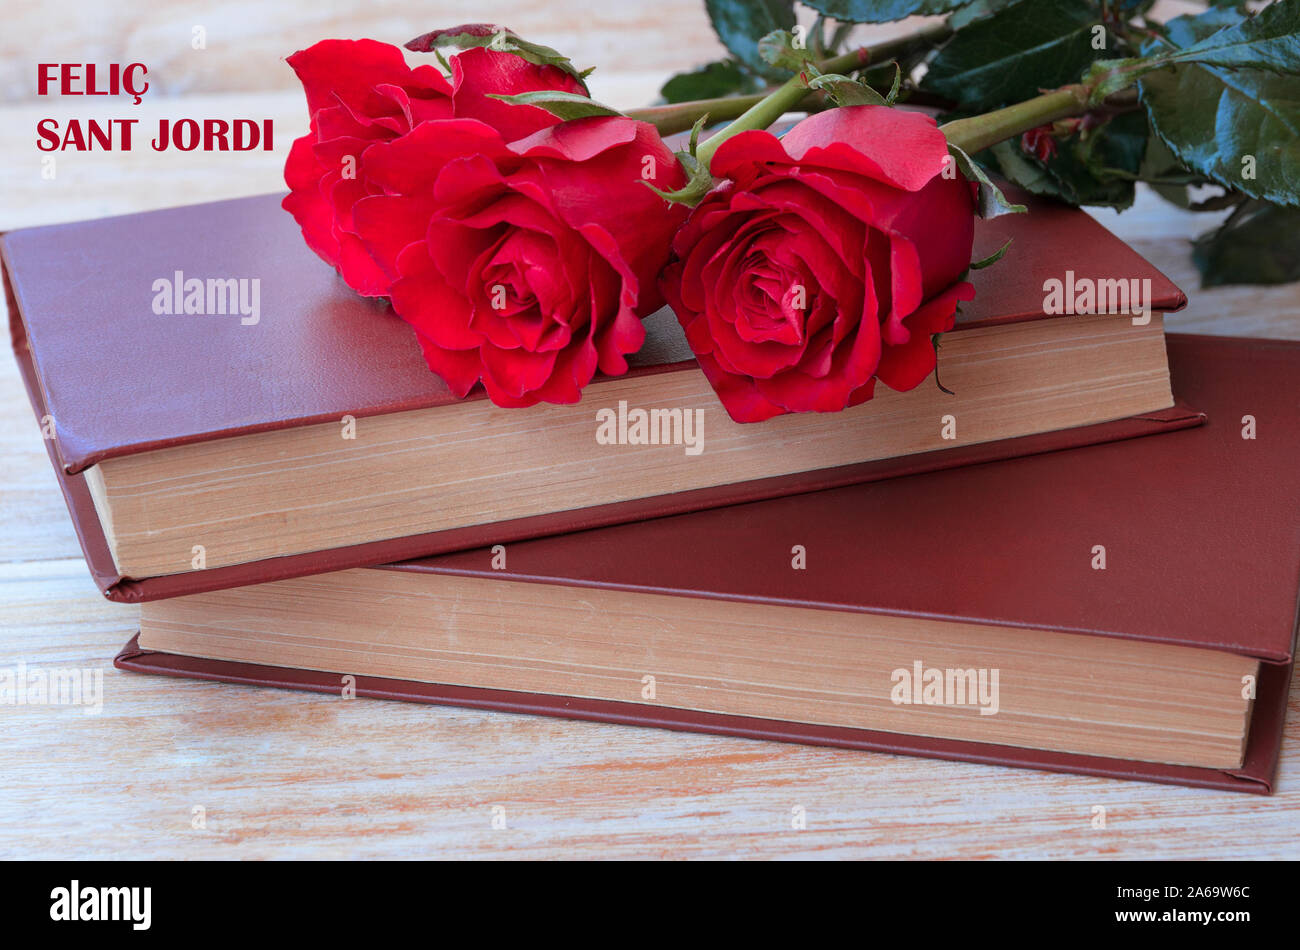 Alte Bücher und red rose, traditionelle Geschenk für Sant Jordi, das Saint Georges Tag. Catalunya's Version von Valentinstag. Phrase Happy Saint Georges in c Stockfoto